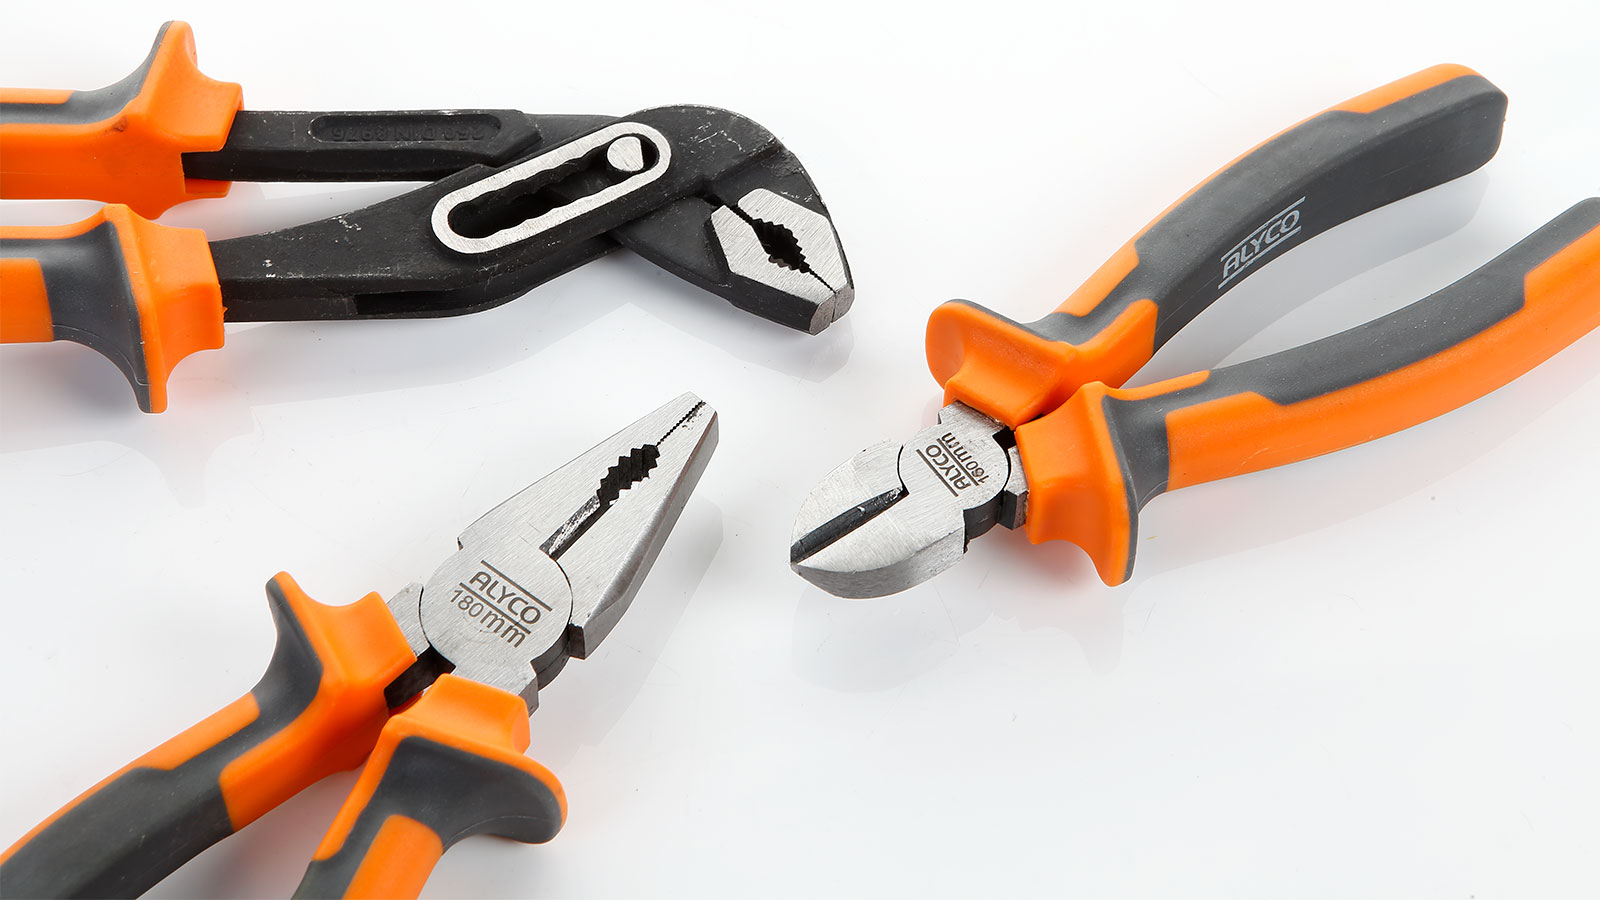 Alyco Orange herramientas